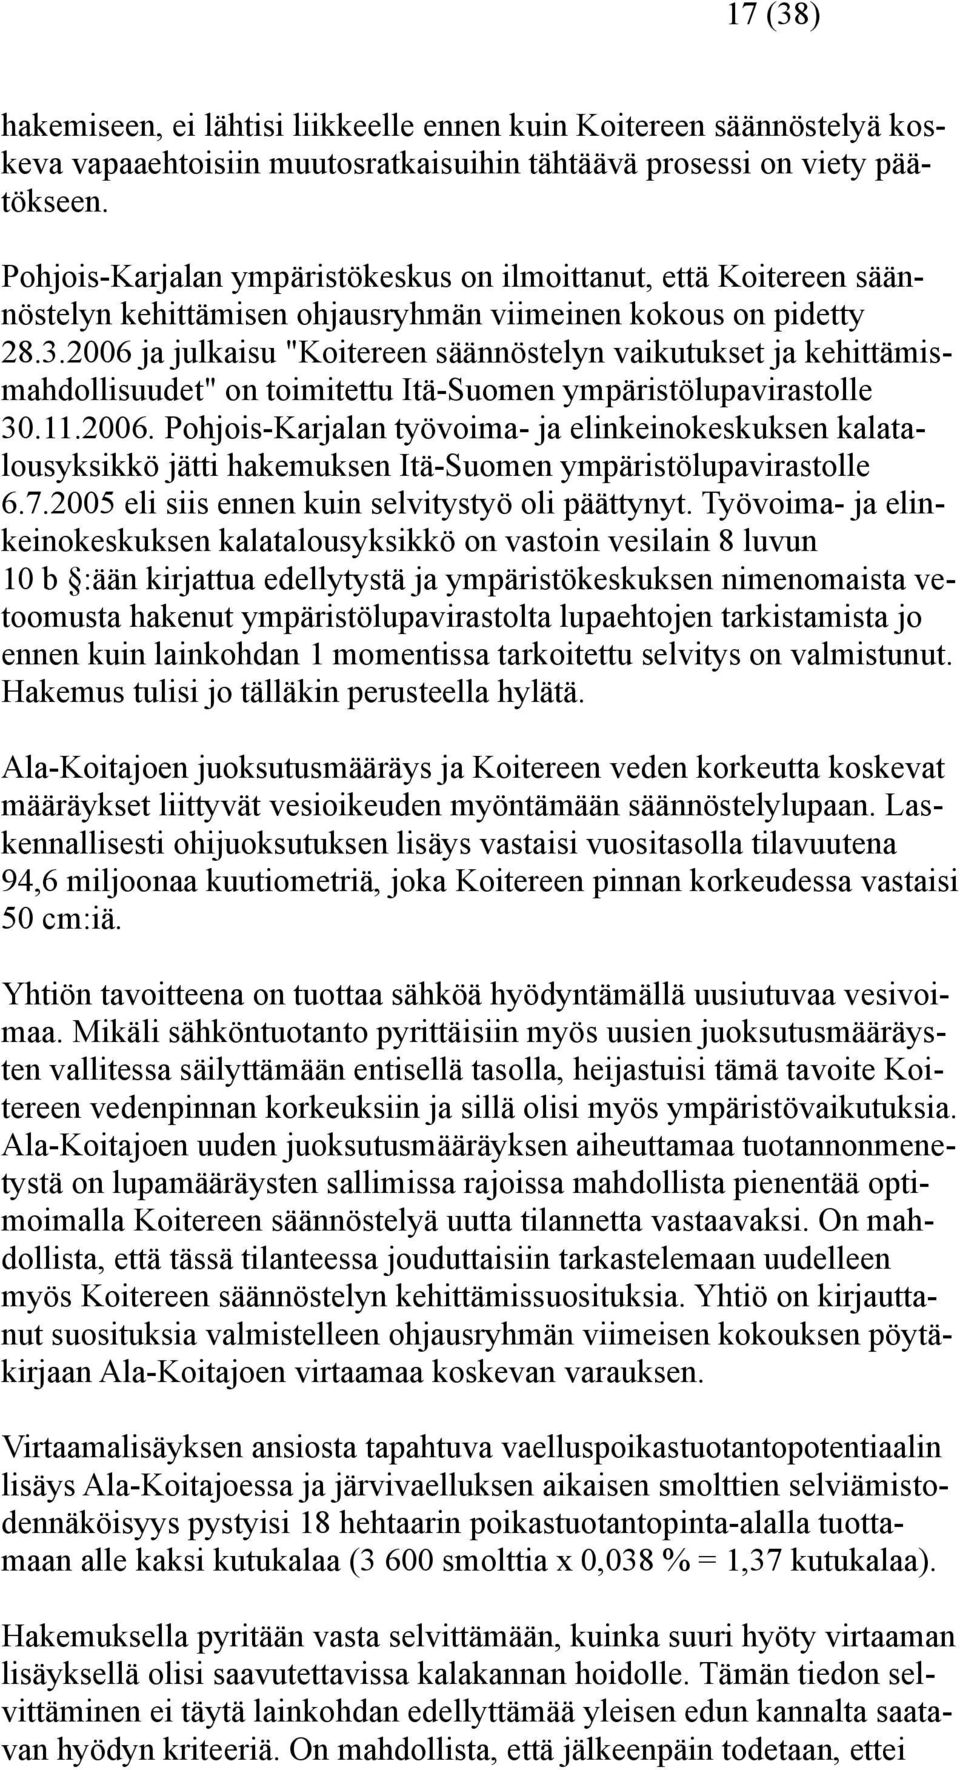 2006 ja julkaisu "Koitereen säännöstelyn vaikutukset ja kehittämismahdollisuudet" on toimitettu Itä-Suomen ympäristölupavirastolle 30.11.2006. Pohjois-Karjalan työvoima- ja elinkeinokeskuksen kalatalousyksikkö jätti hakemuksen Itä-Suomen ympäristölupavirastolle 6.